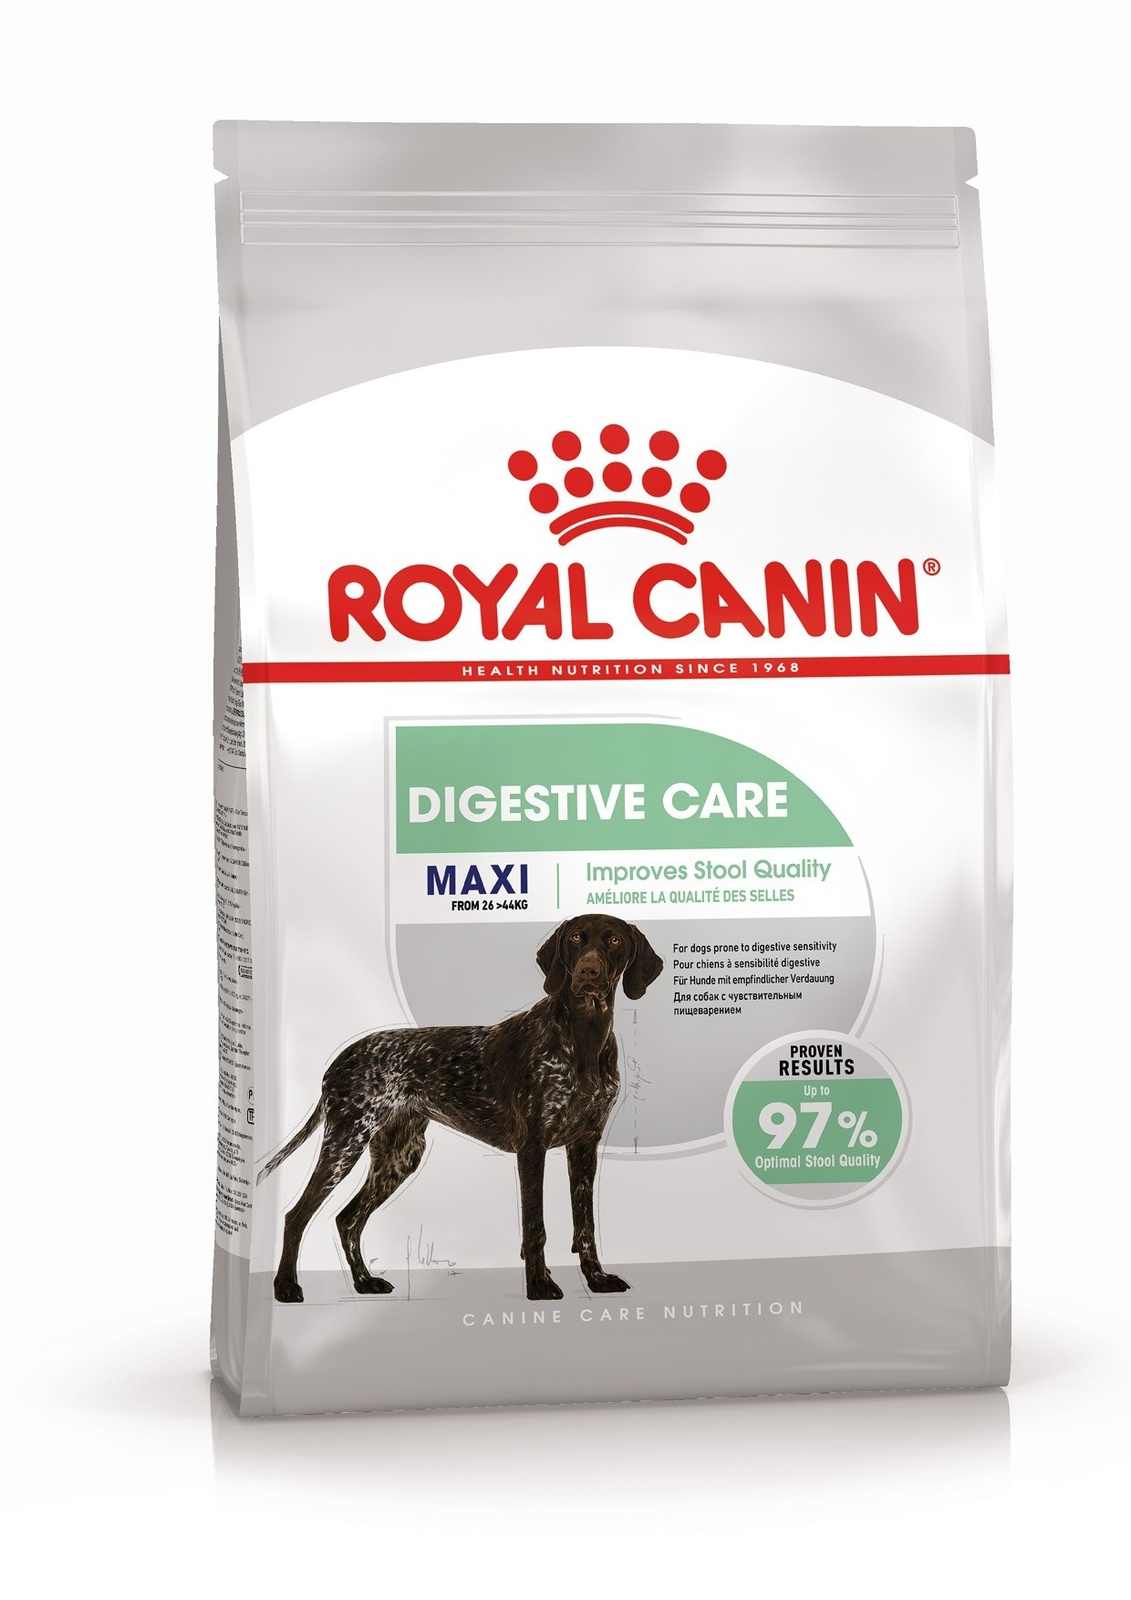 Royal Canin Корм Royal Canin для собак крупных пород с чувствительным пищеварением (3 кг) royal canin maxi digestive care сухой корм для собак крупных пород с чувствительным пищеварением 12 кг